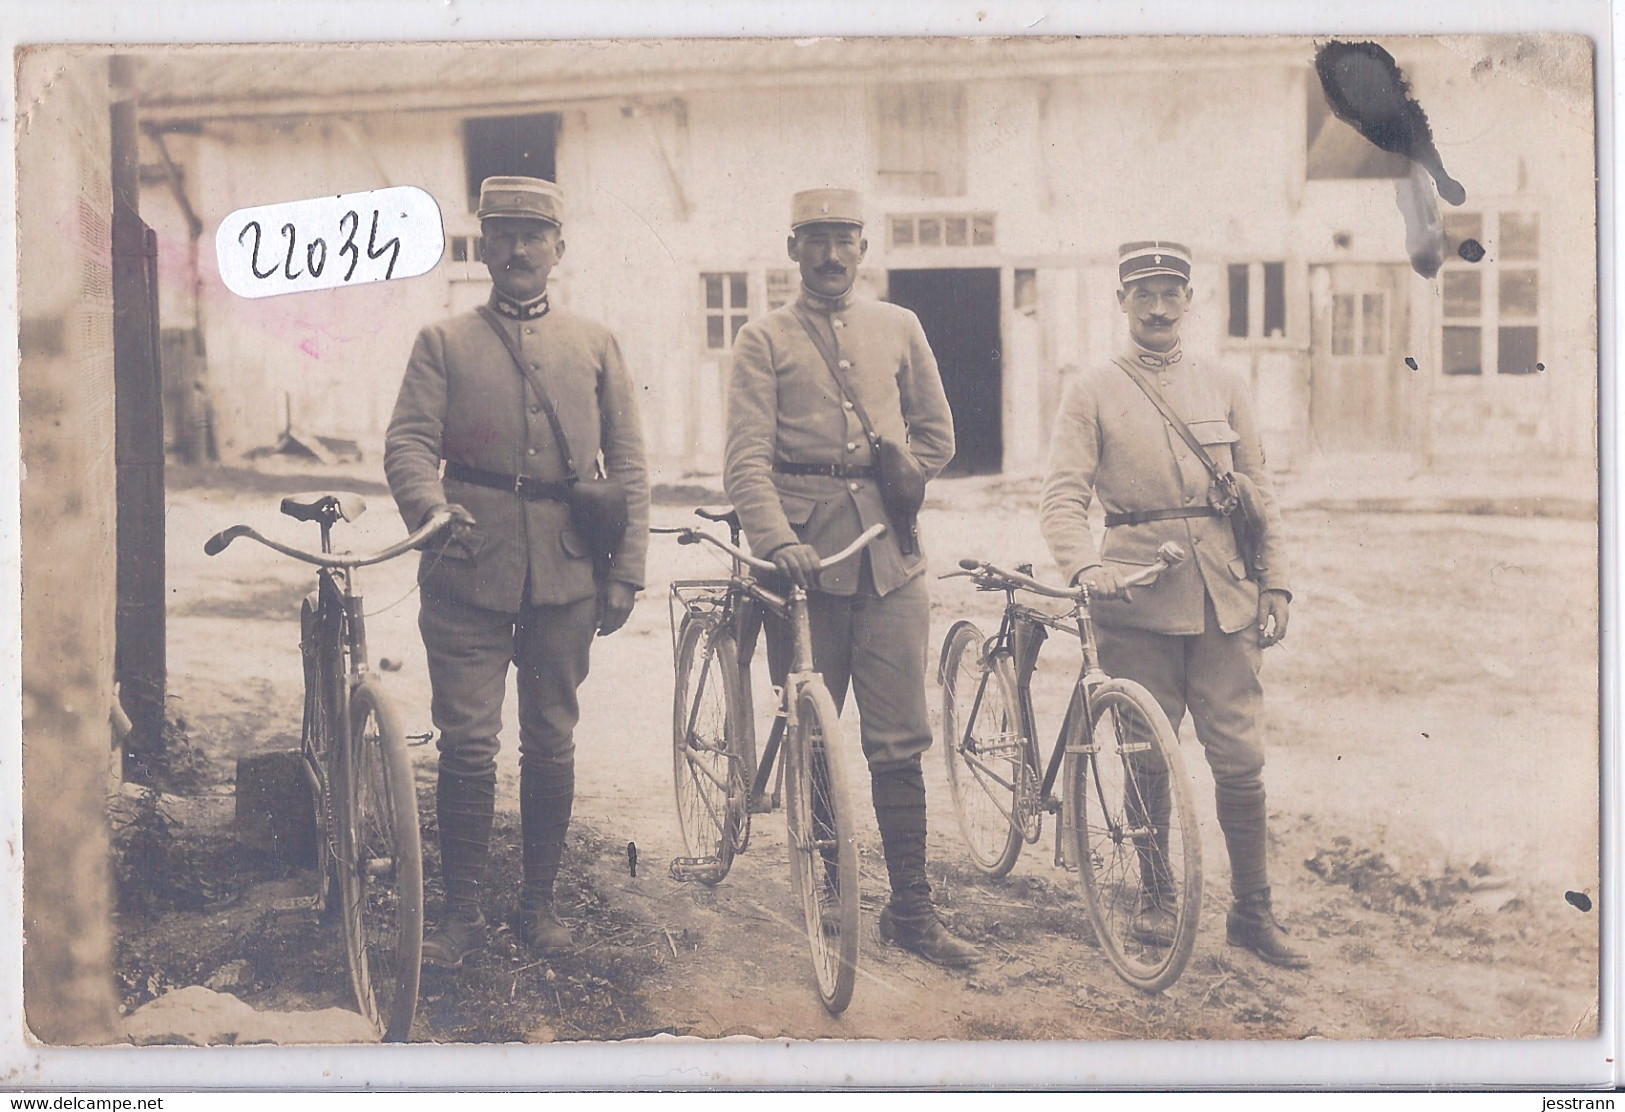 soude officiers guerre 1914 01.jpg